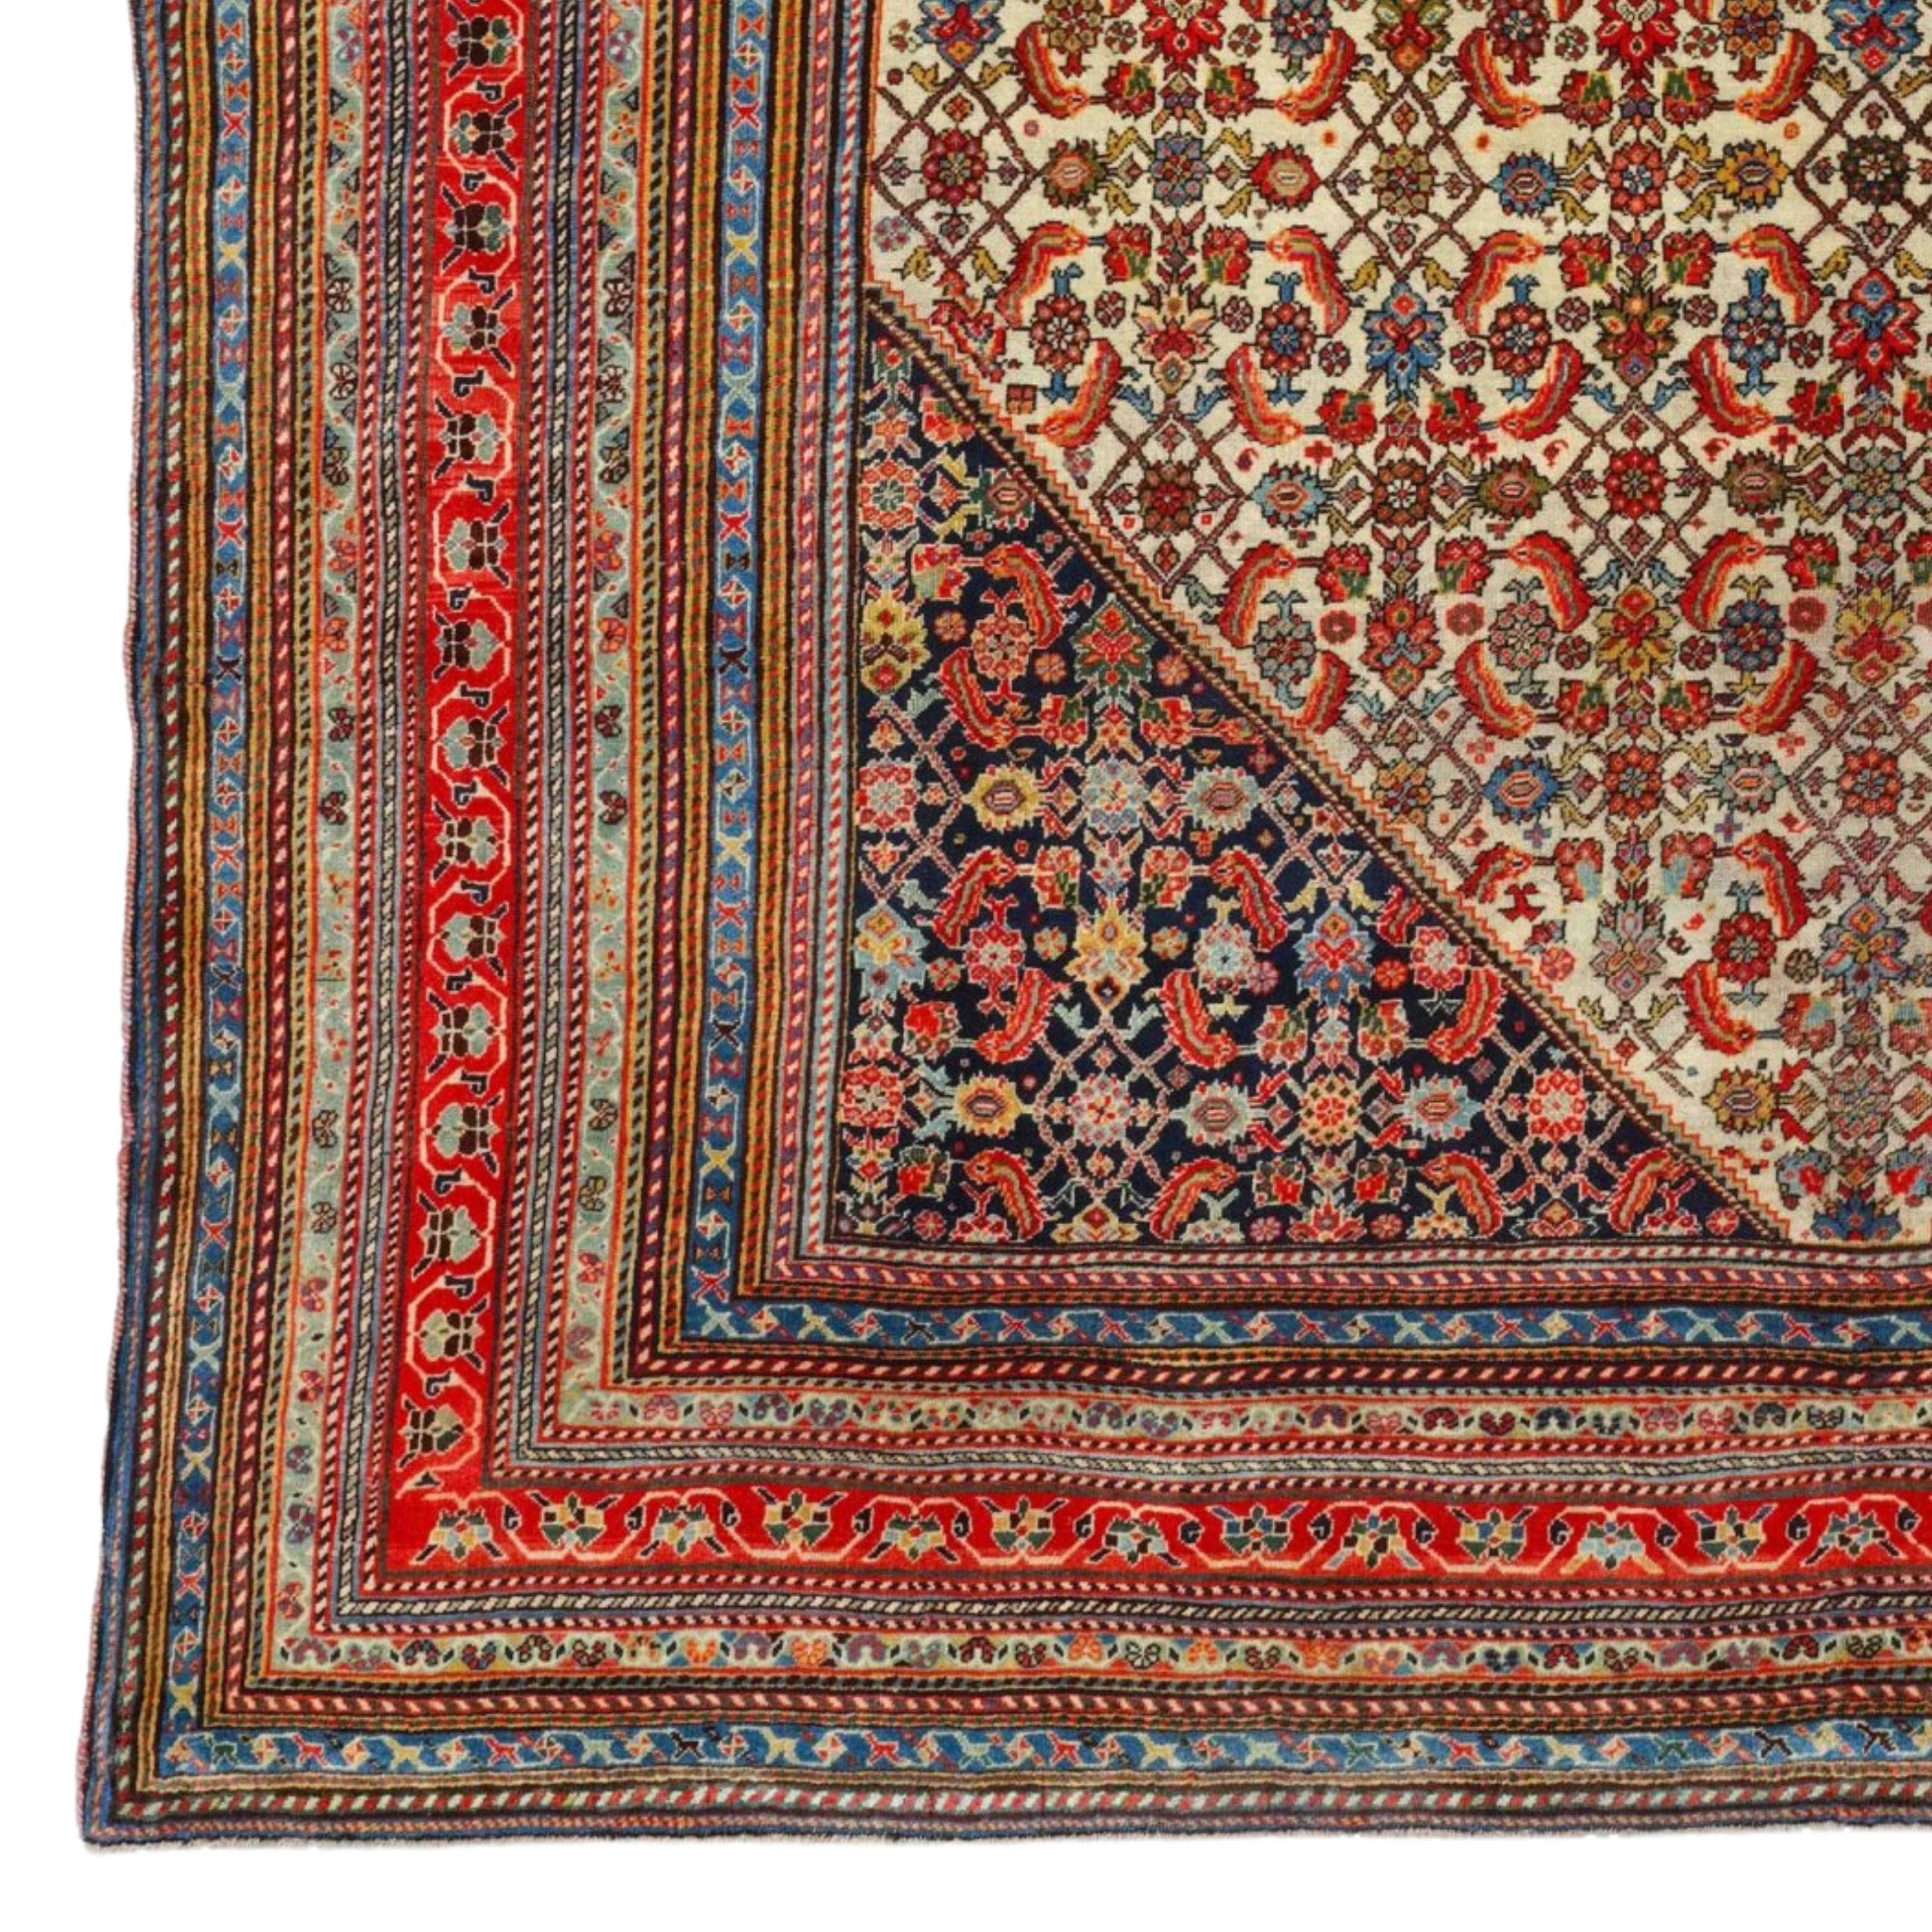 Antiker Kaskhai-Teppich
Kaskhai-Teppich mit Seidenschuß aus dem späten 19. Jahrhundert in perfektem Zustand
Größe 193 x 245 cm (75,9x96,4 In)

Dieser Kaskhai-Teppich aus Seide ist ein Produkt komplizierter Handwerkskunst und spiegelt das reiche